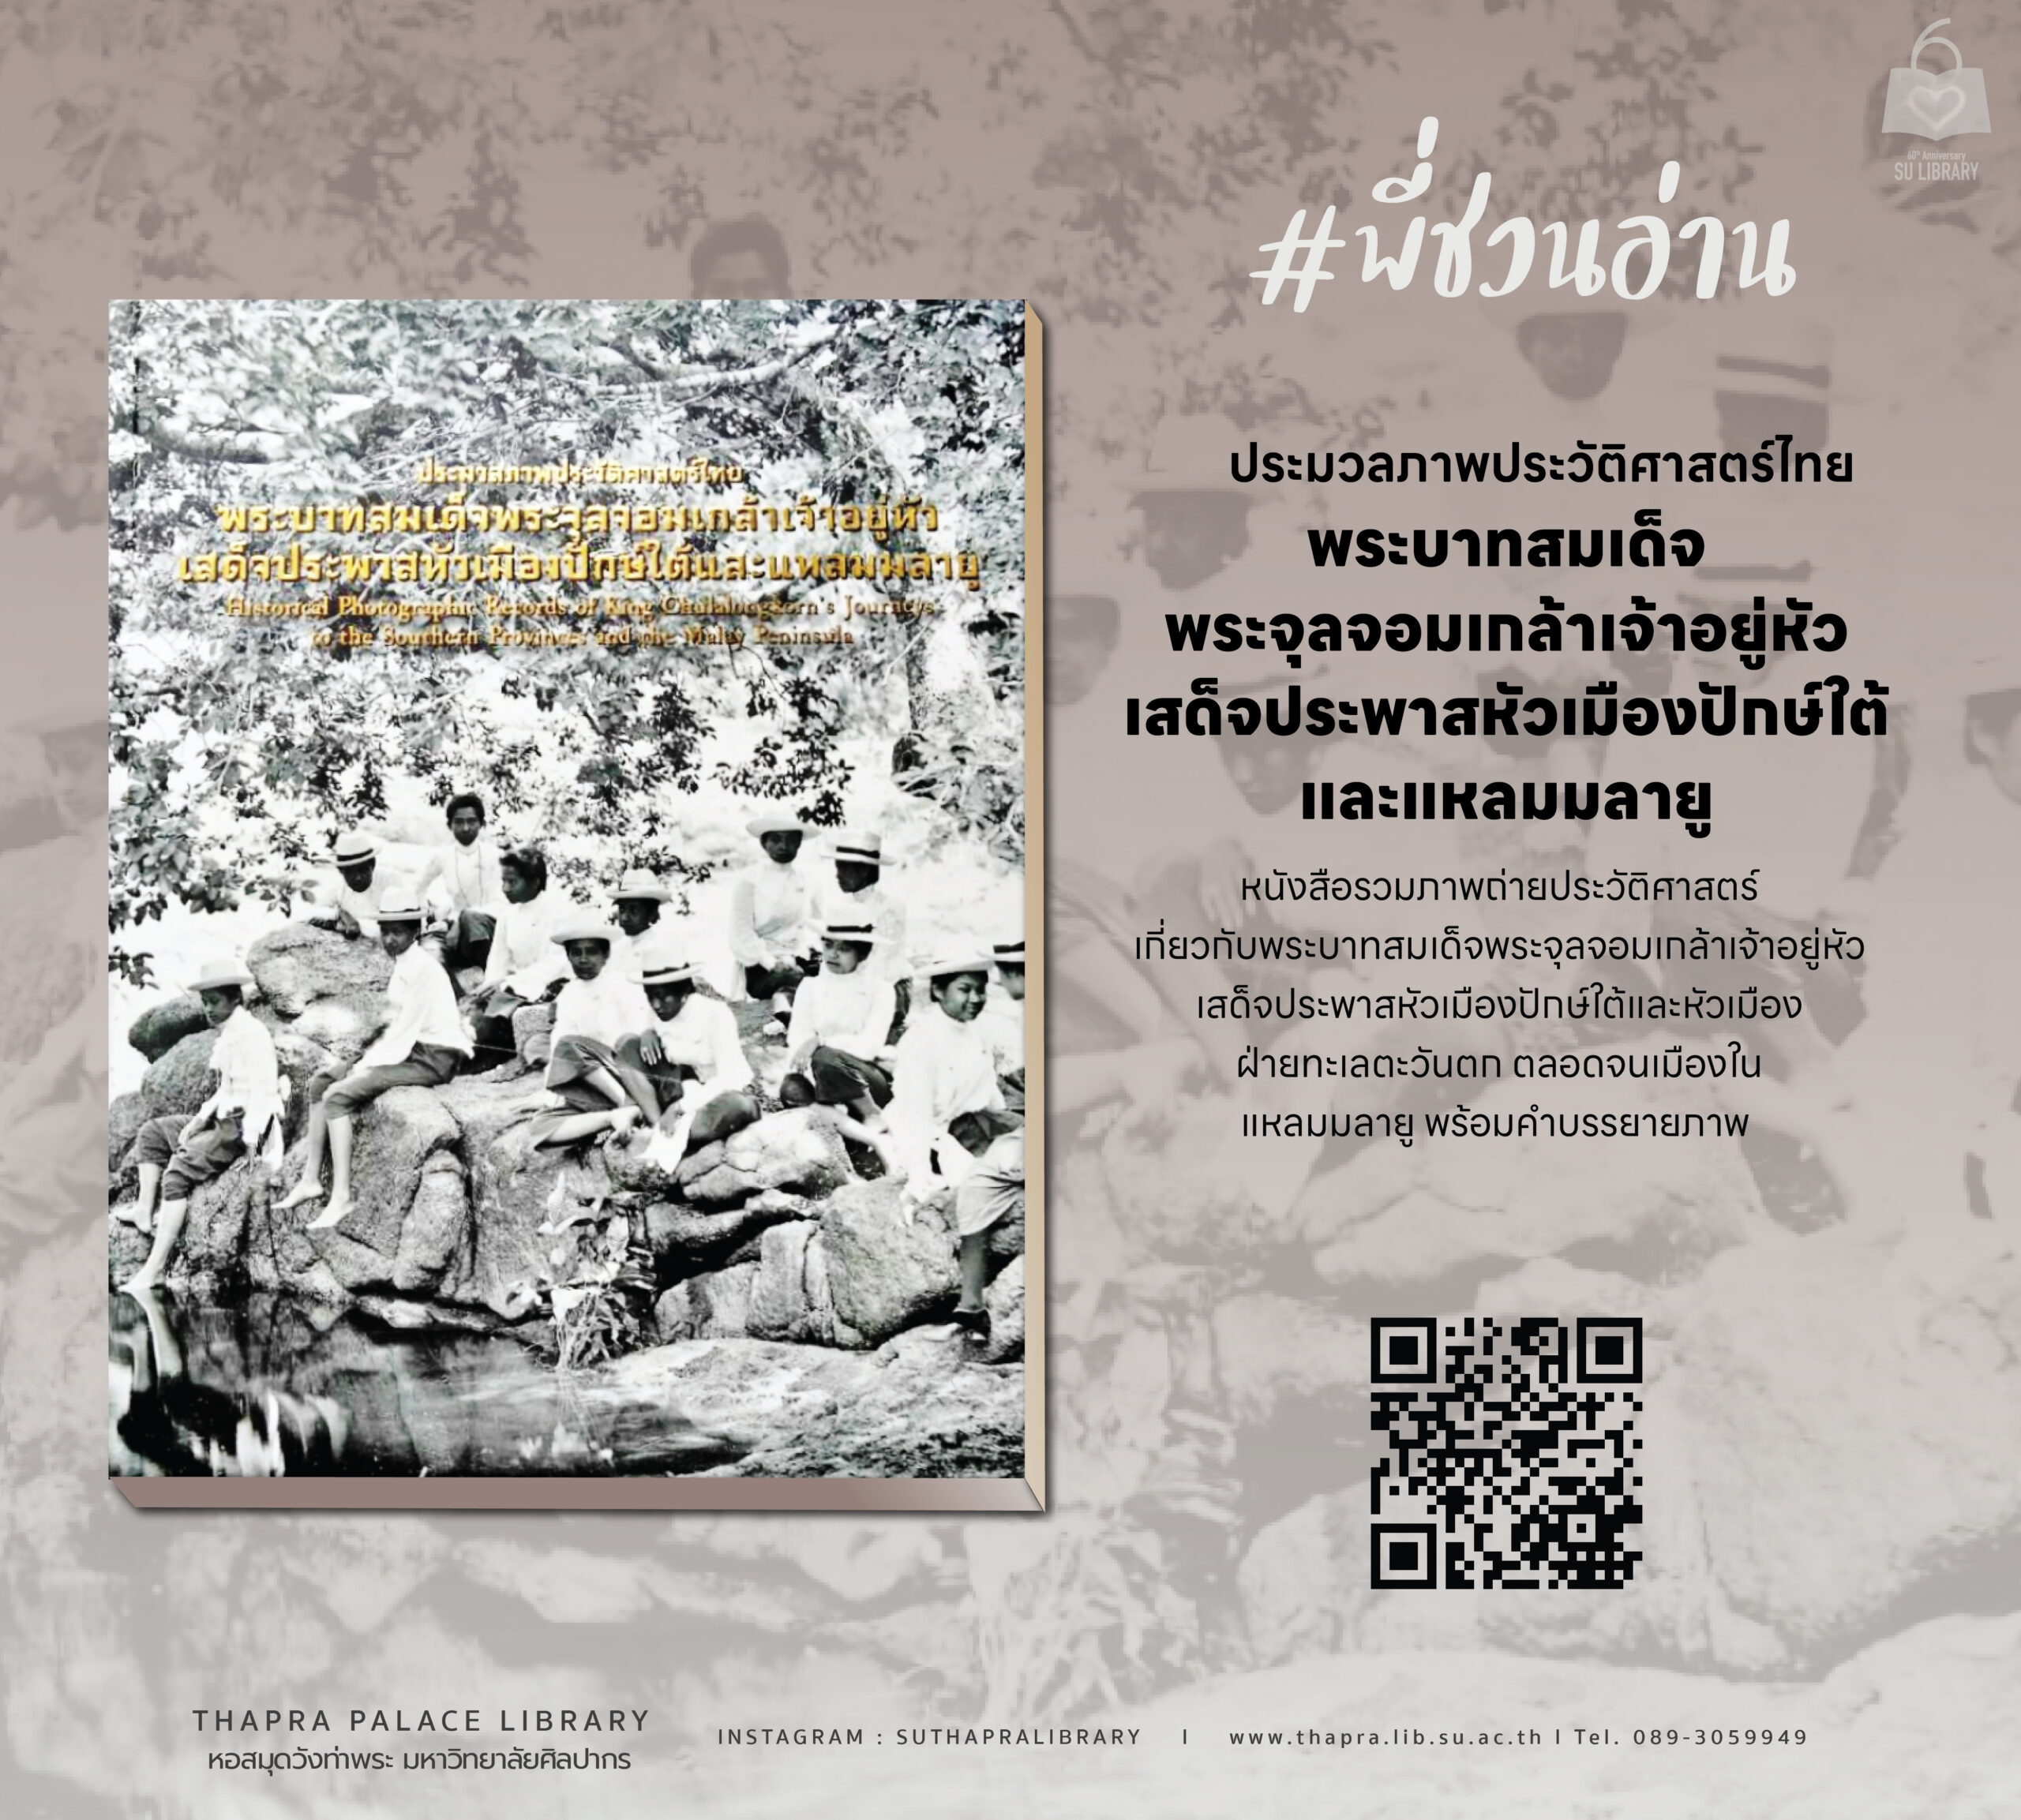 ประมวลภาพประวัติศาสตร์ไทย พระบาทสมเด็จพระจุลจอมเกล้าเจ้าอยู่หัวเสด็จประพาสหัวเมืองปักษ์ใต้และแหลมมลายู